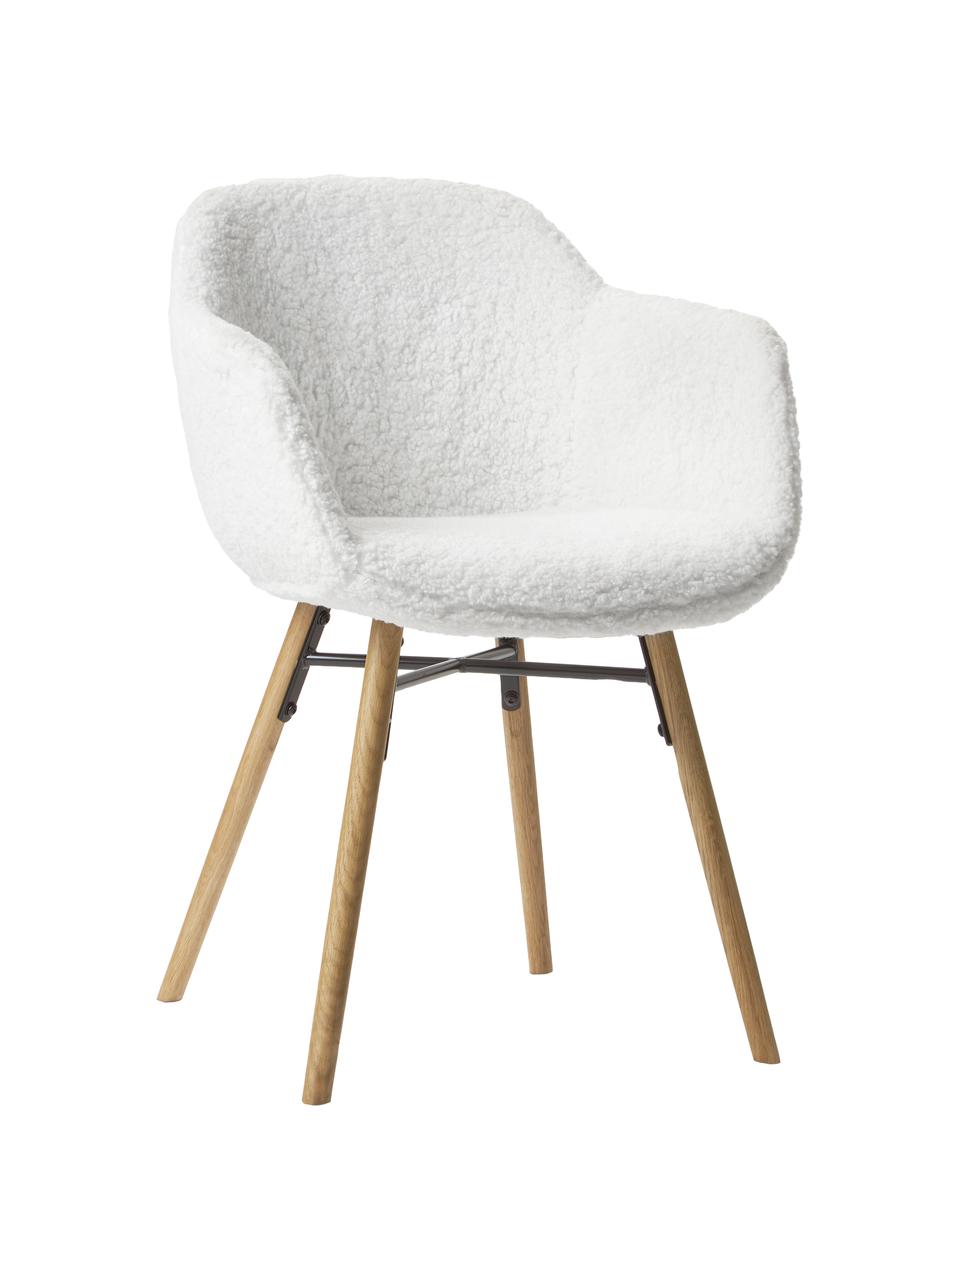 Petite chaise à accoudoirs tissu peluche avec pieds en bois Fiji, Tissu peluche blanc crème, bois, larg. 59 x haut. 84 cm